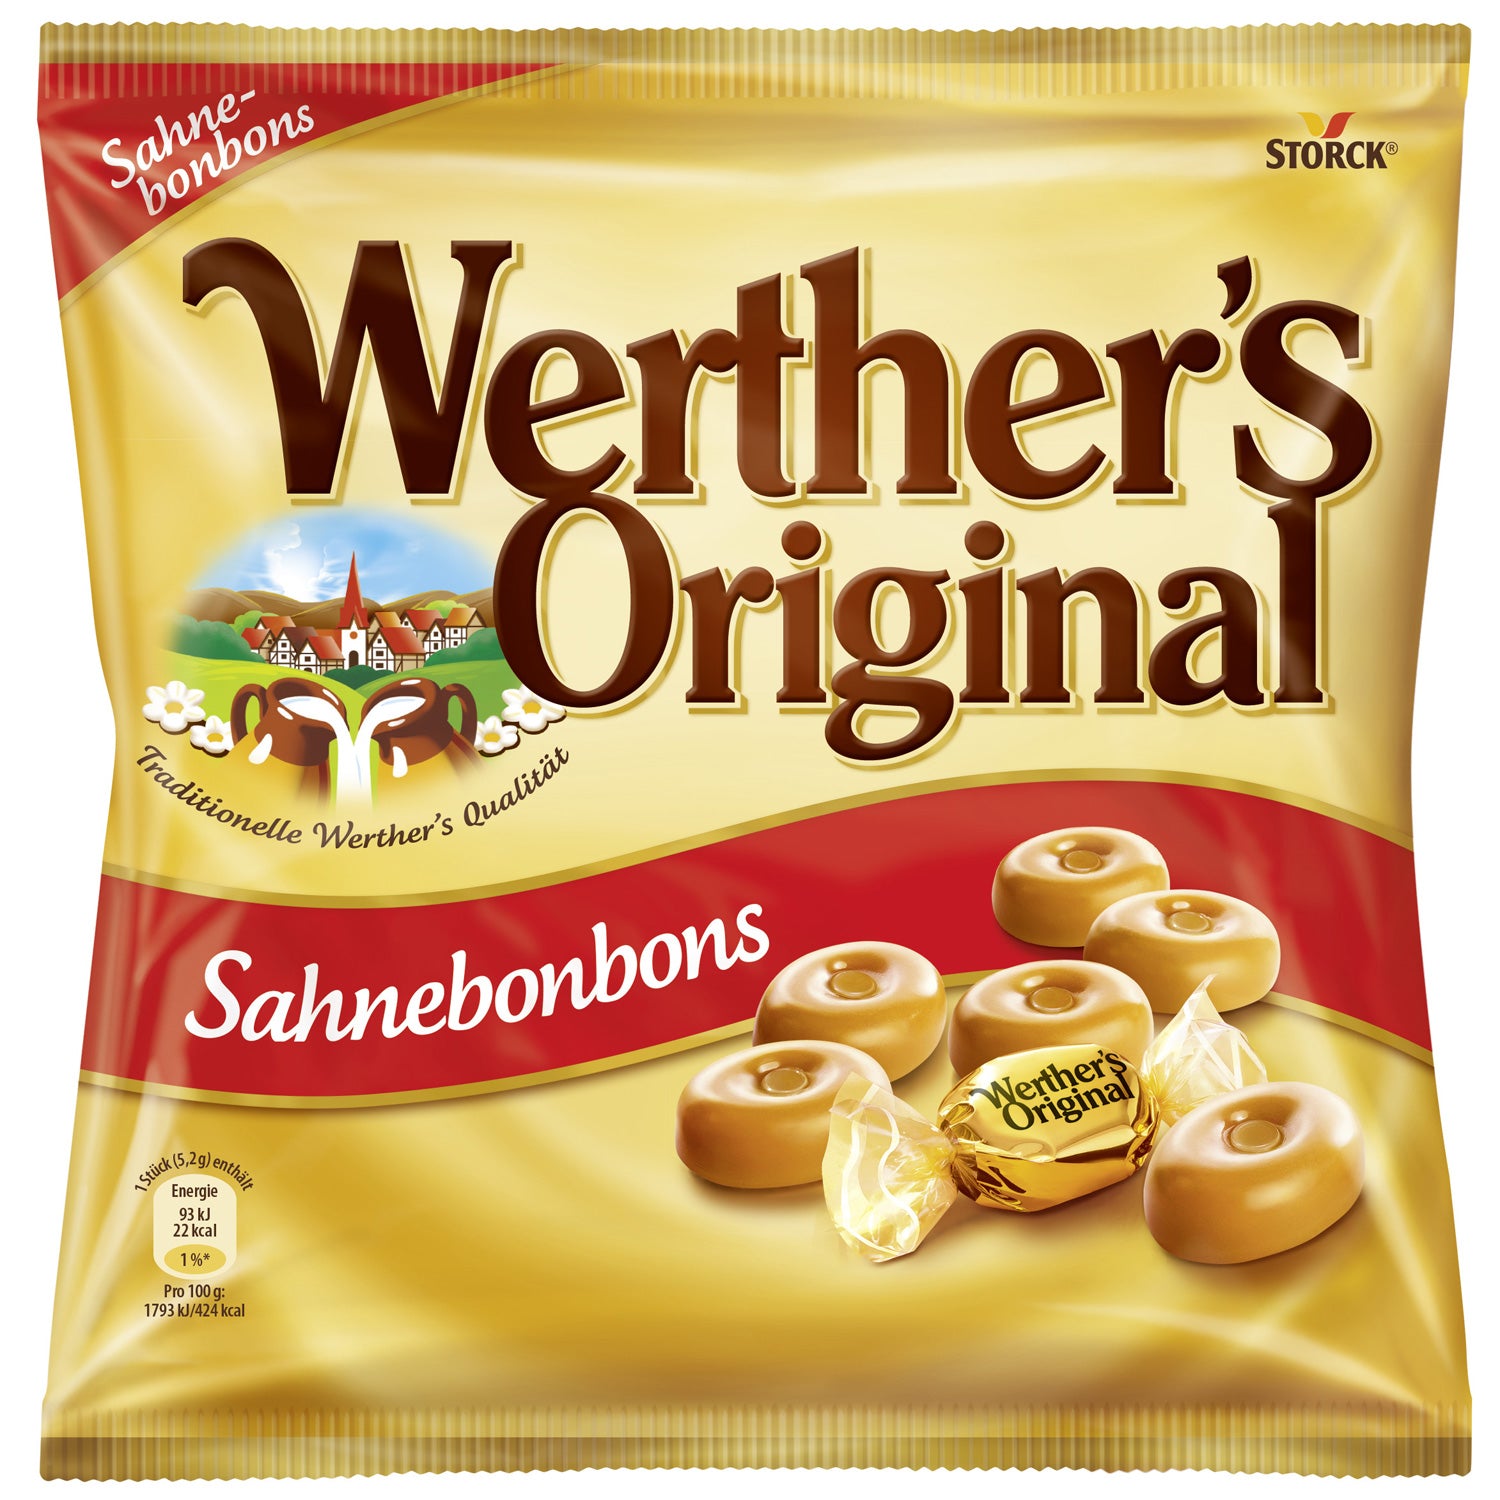 Werther's Original Klassische Sahnebonbons 245g